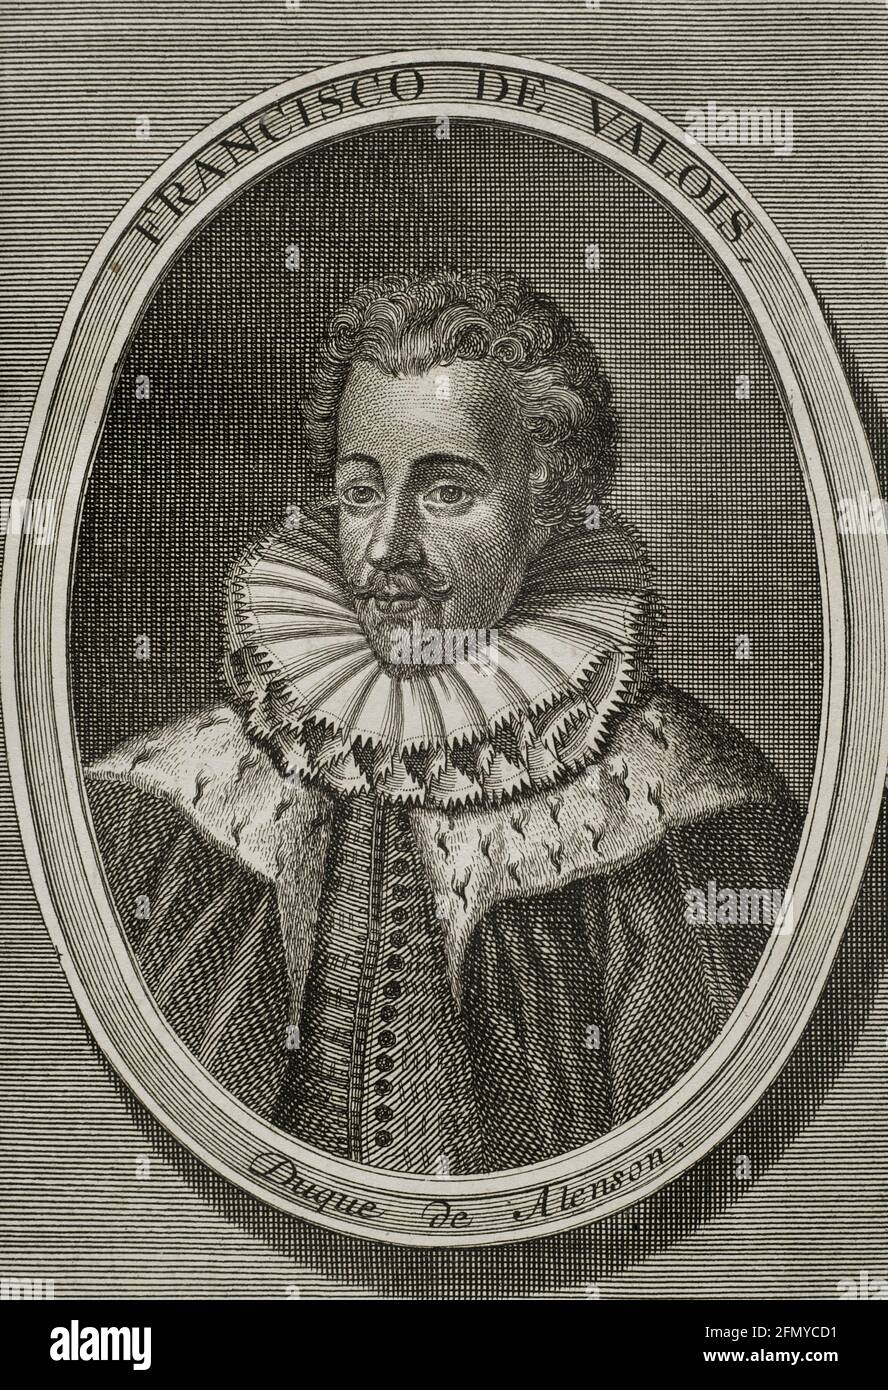 Francisco de Anjou (1554-1584). Príncipe francés. Duque de Anjou y Alençon. Grabado. Guerras de Flandes. Edición publicada en Amberes, 1748. Foto de stock